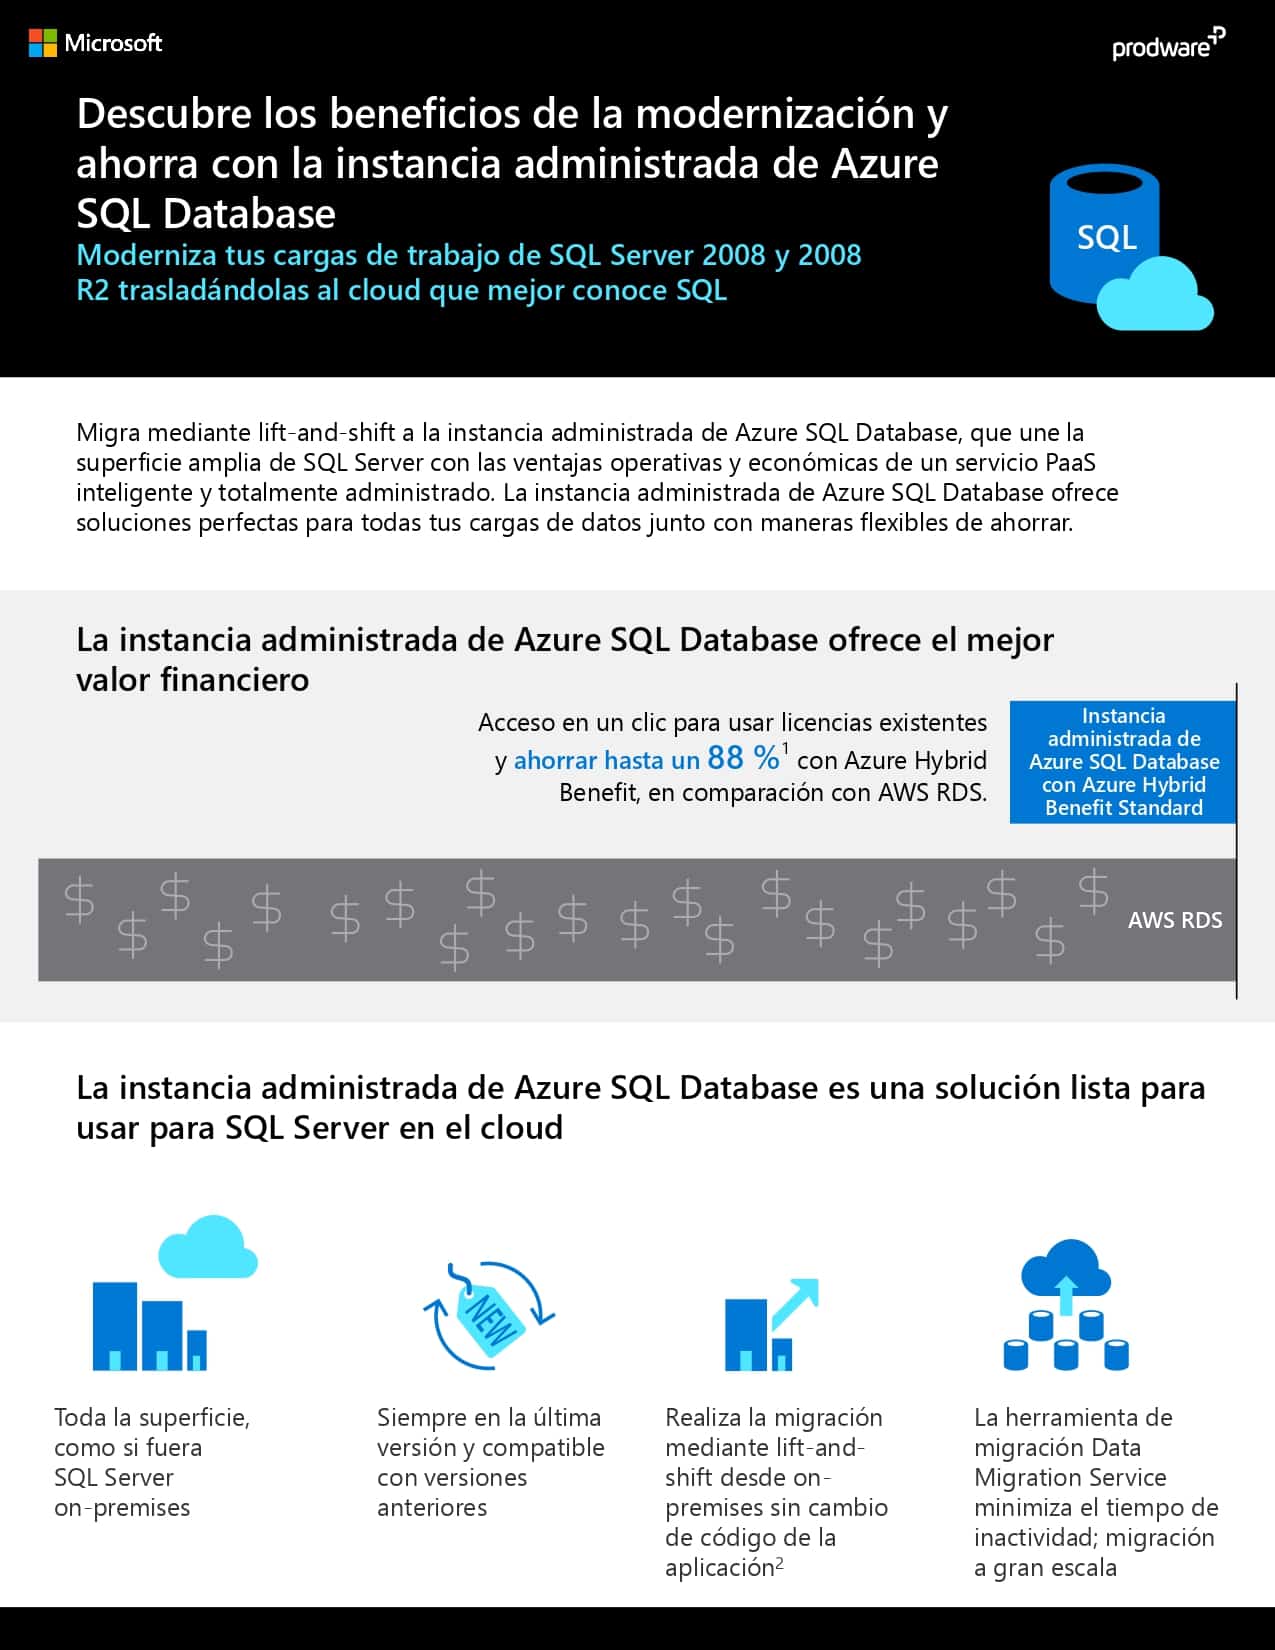 Azure SQL DB modernisation infografia_pages-to-jpg-0001